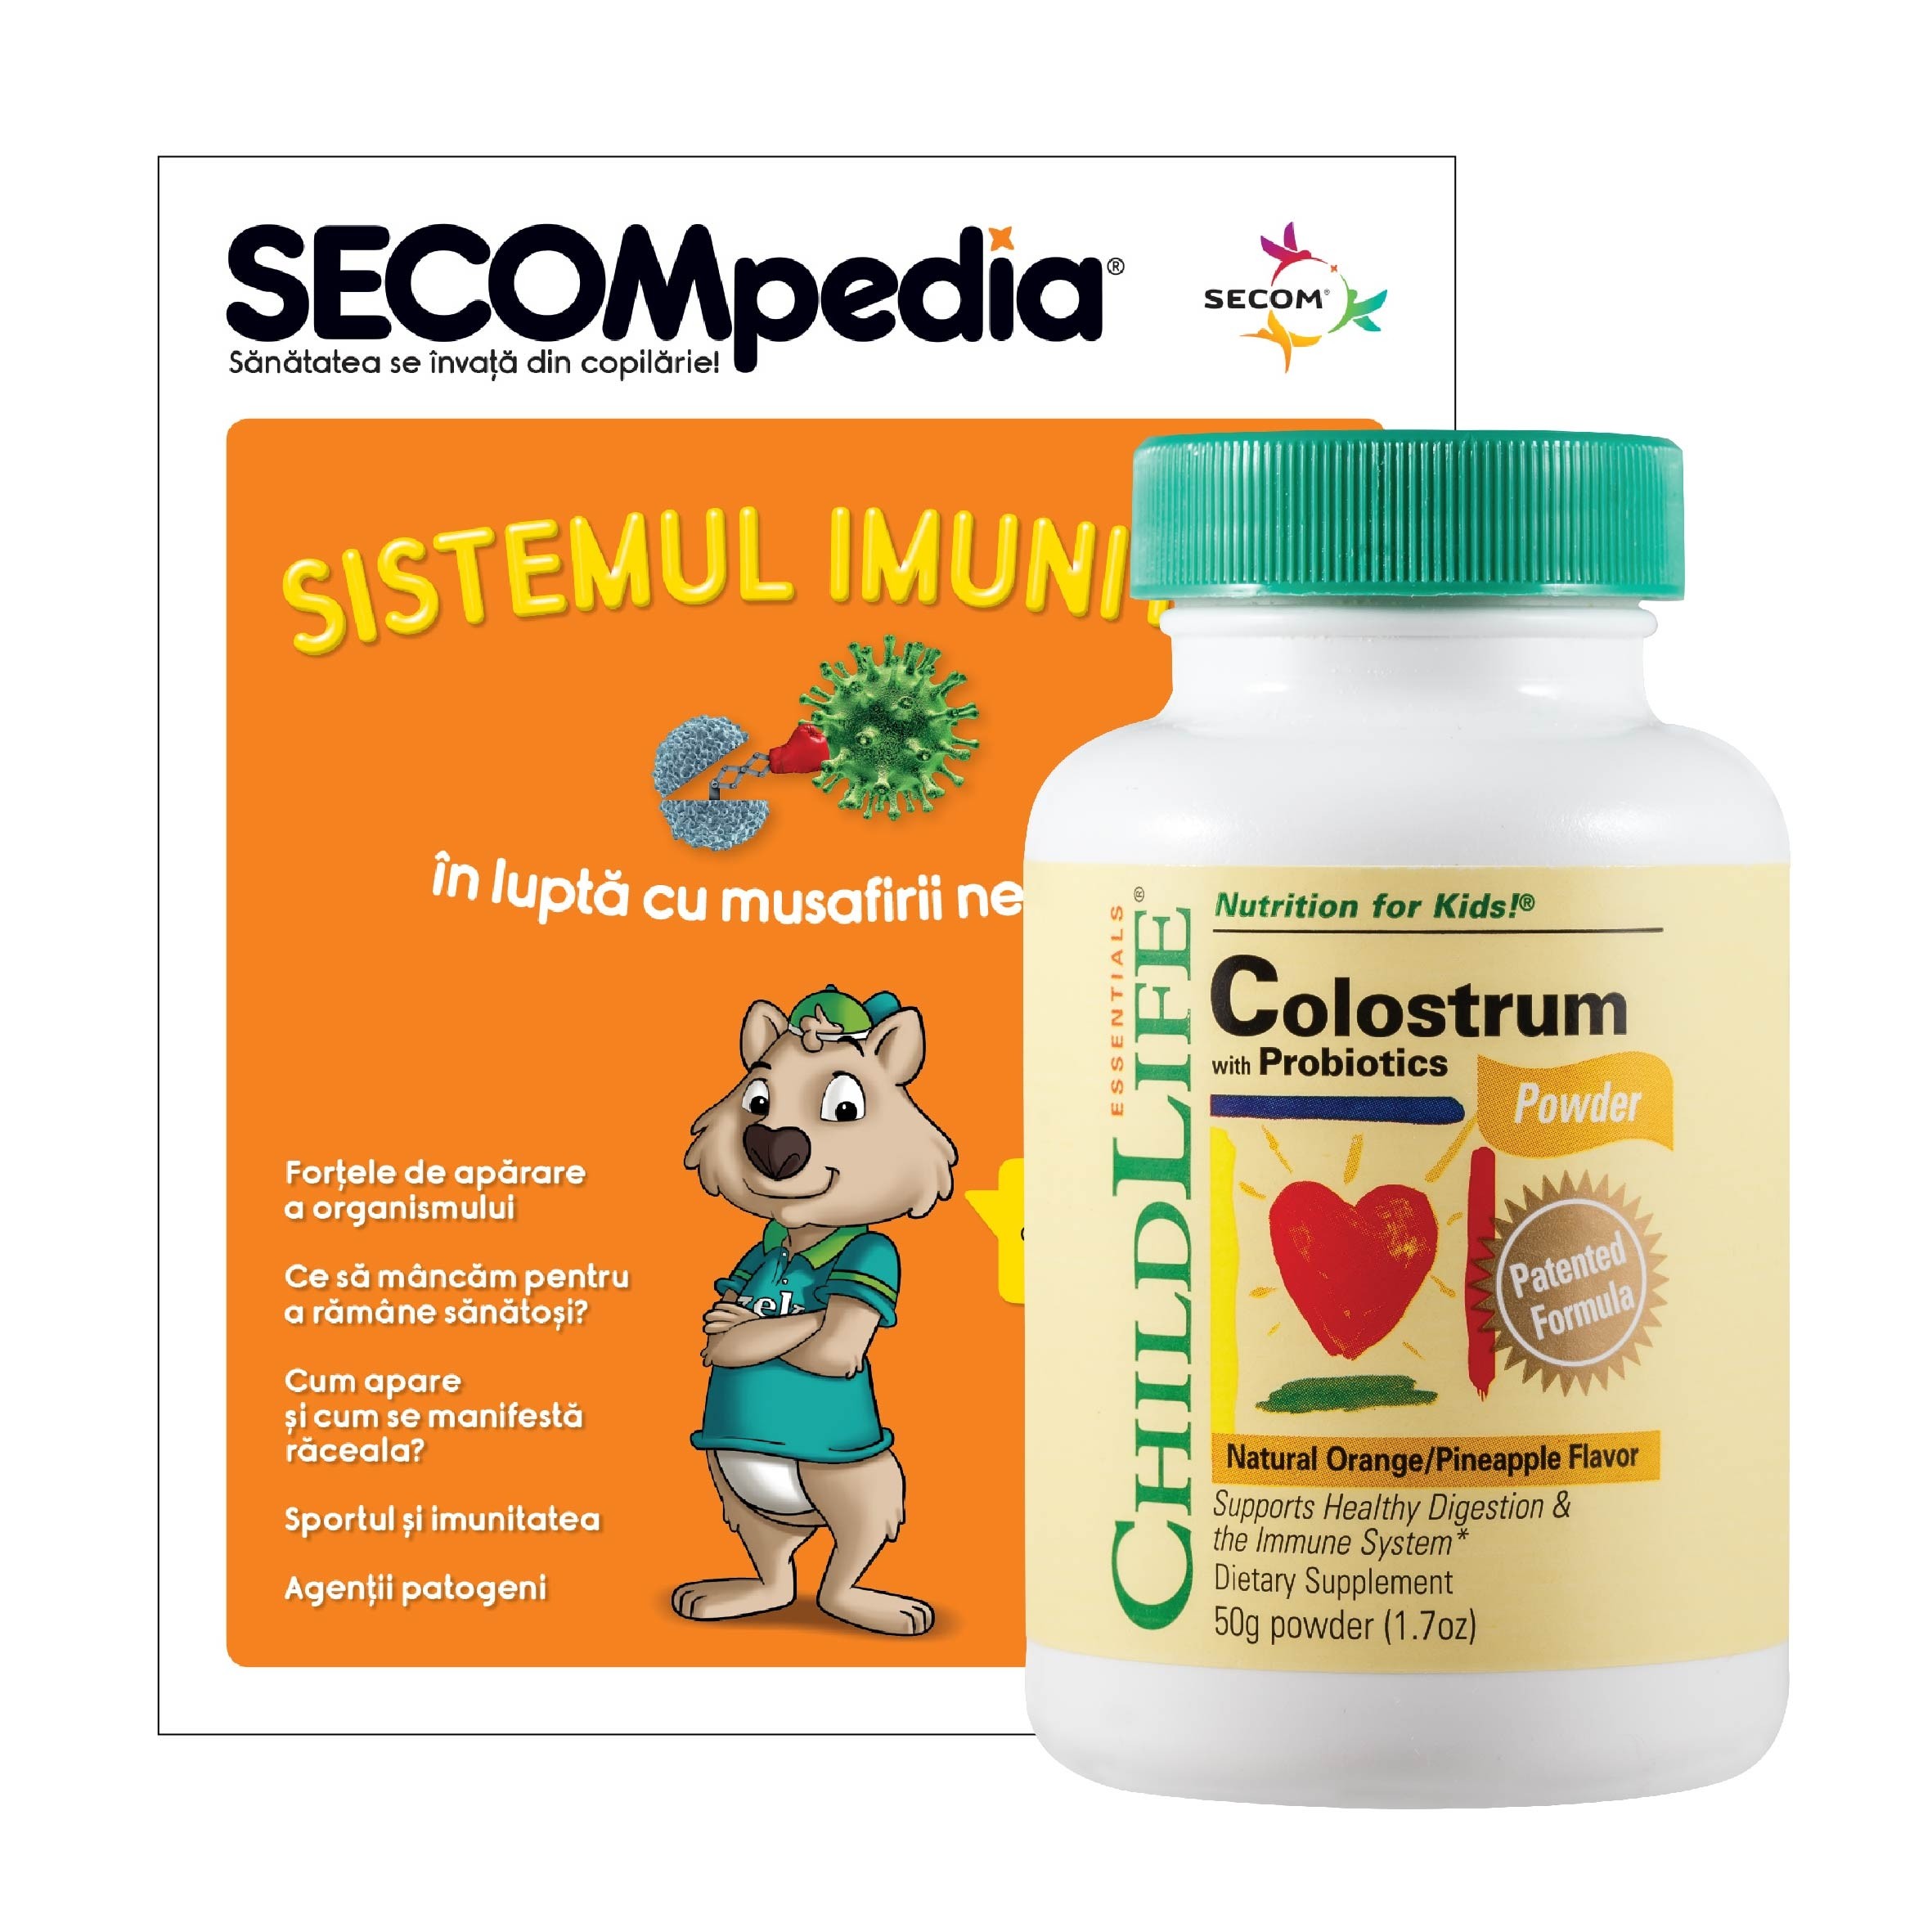 Colostrum plus Probiotics (50g pudra), ChildLife Essentials